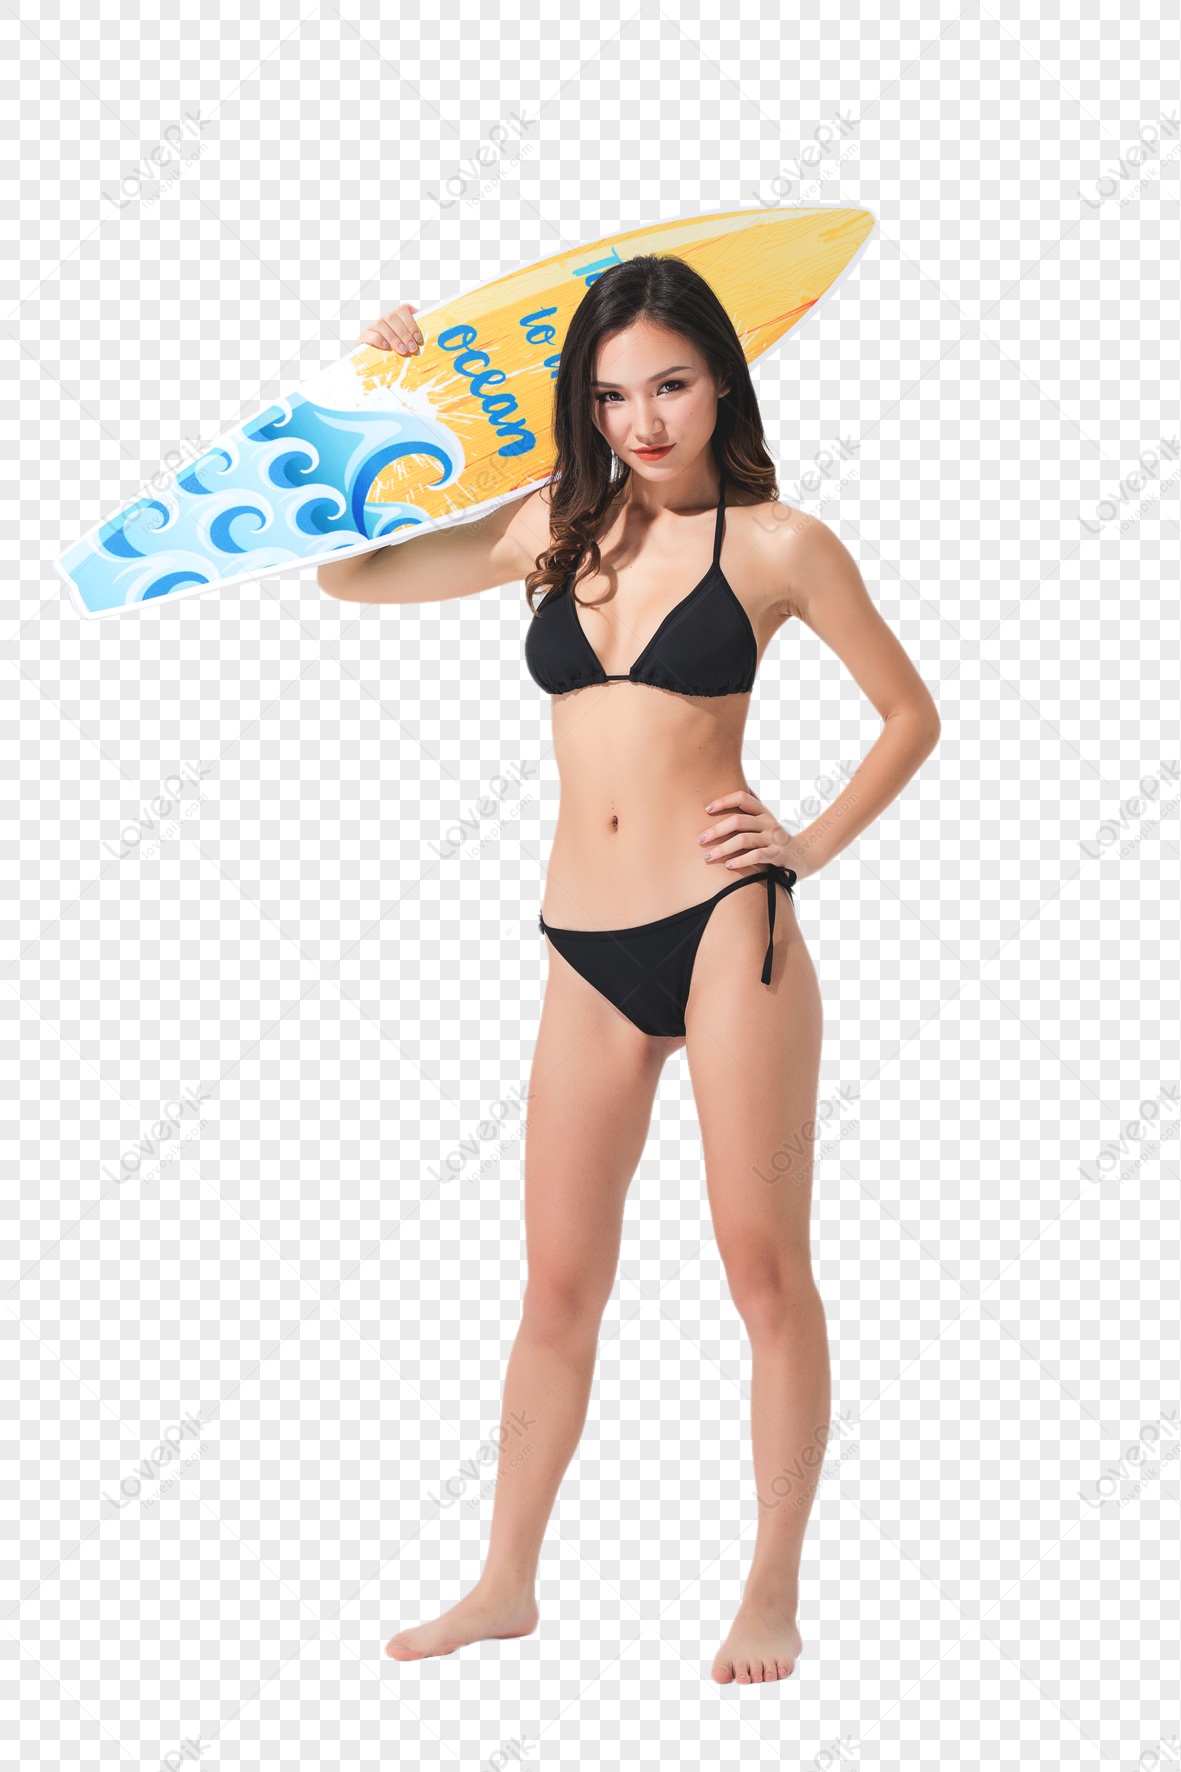 Mooie Vrouw In Zwarte Bikini Die Surfplank Houdt Afbeelding | Gratis grafiek Downloaden op Lovepik